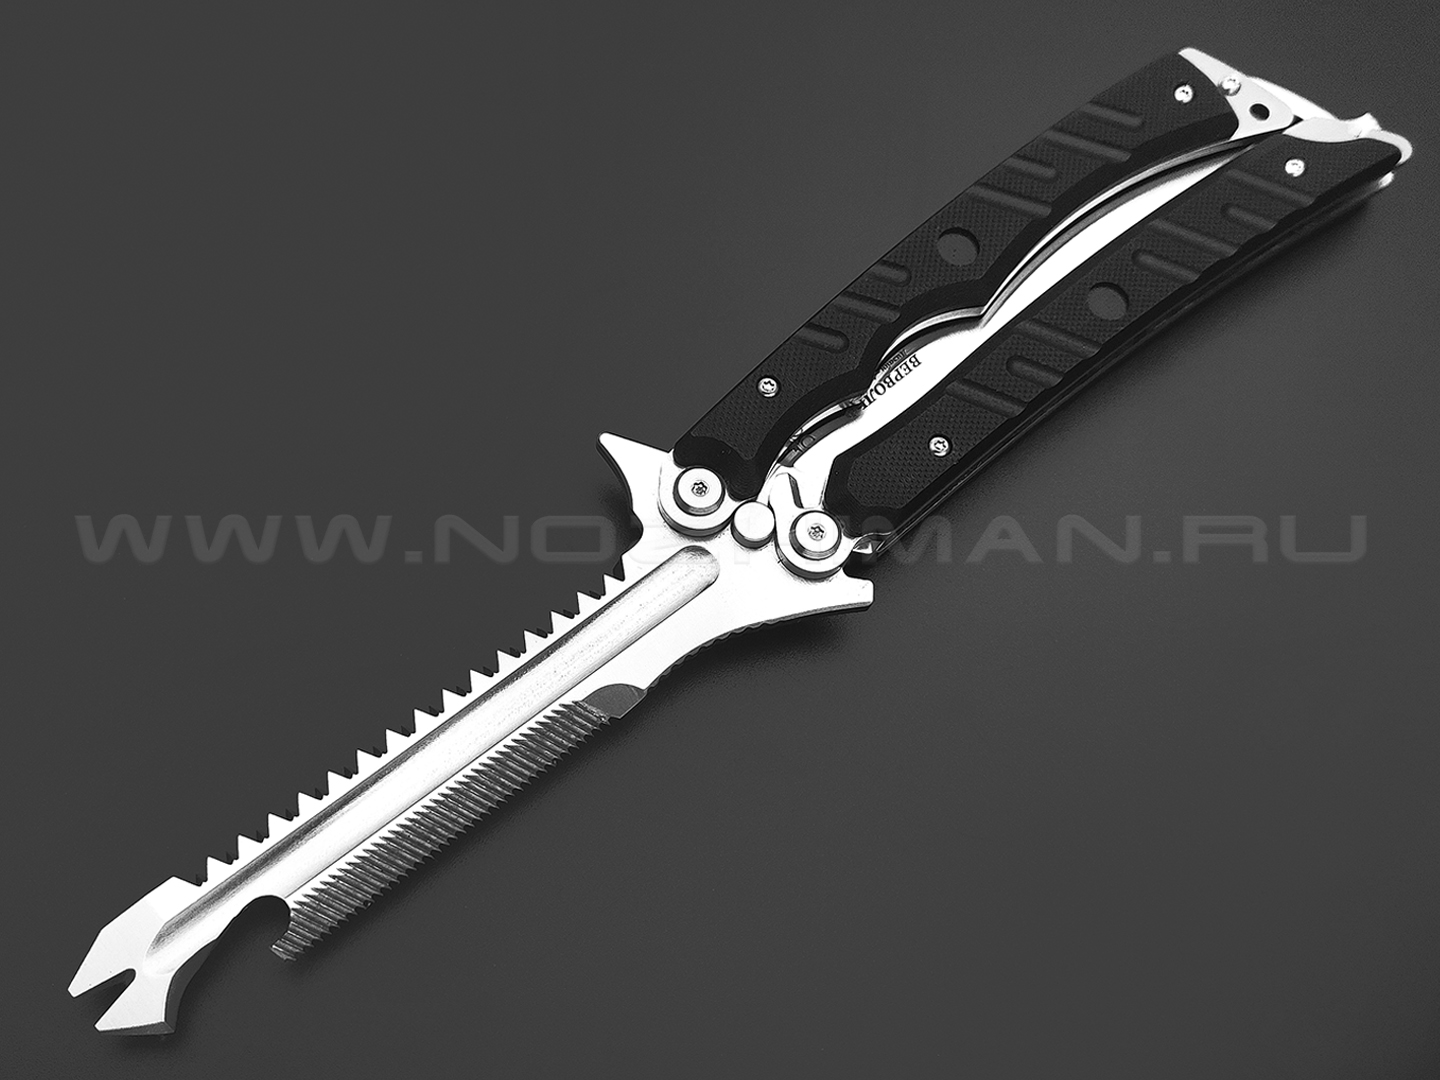 Нокс нож многофункциональный Вервольф 601-140427 сталь 440C satin, рукоять G10 black